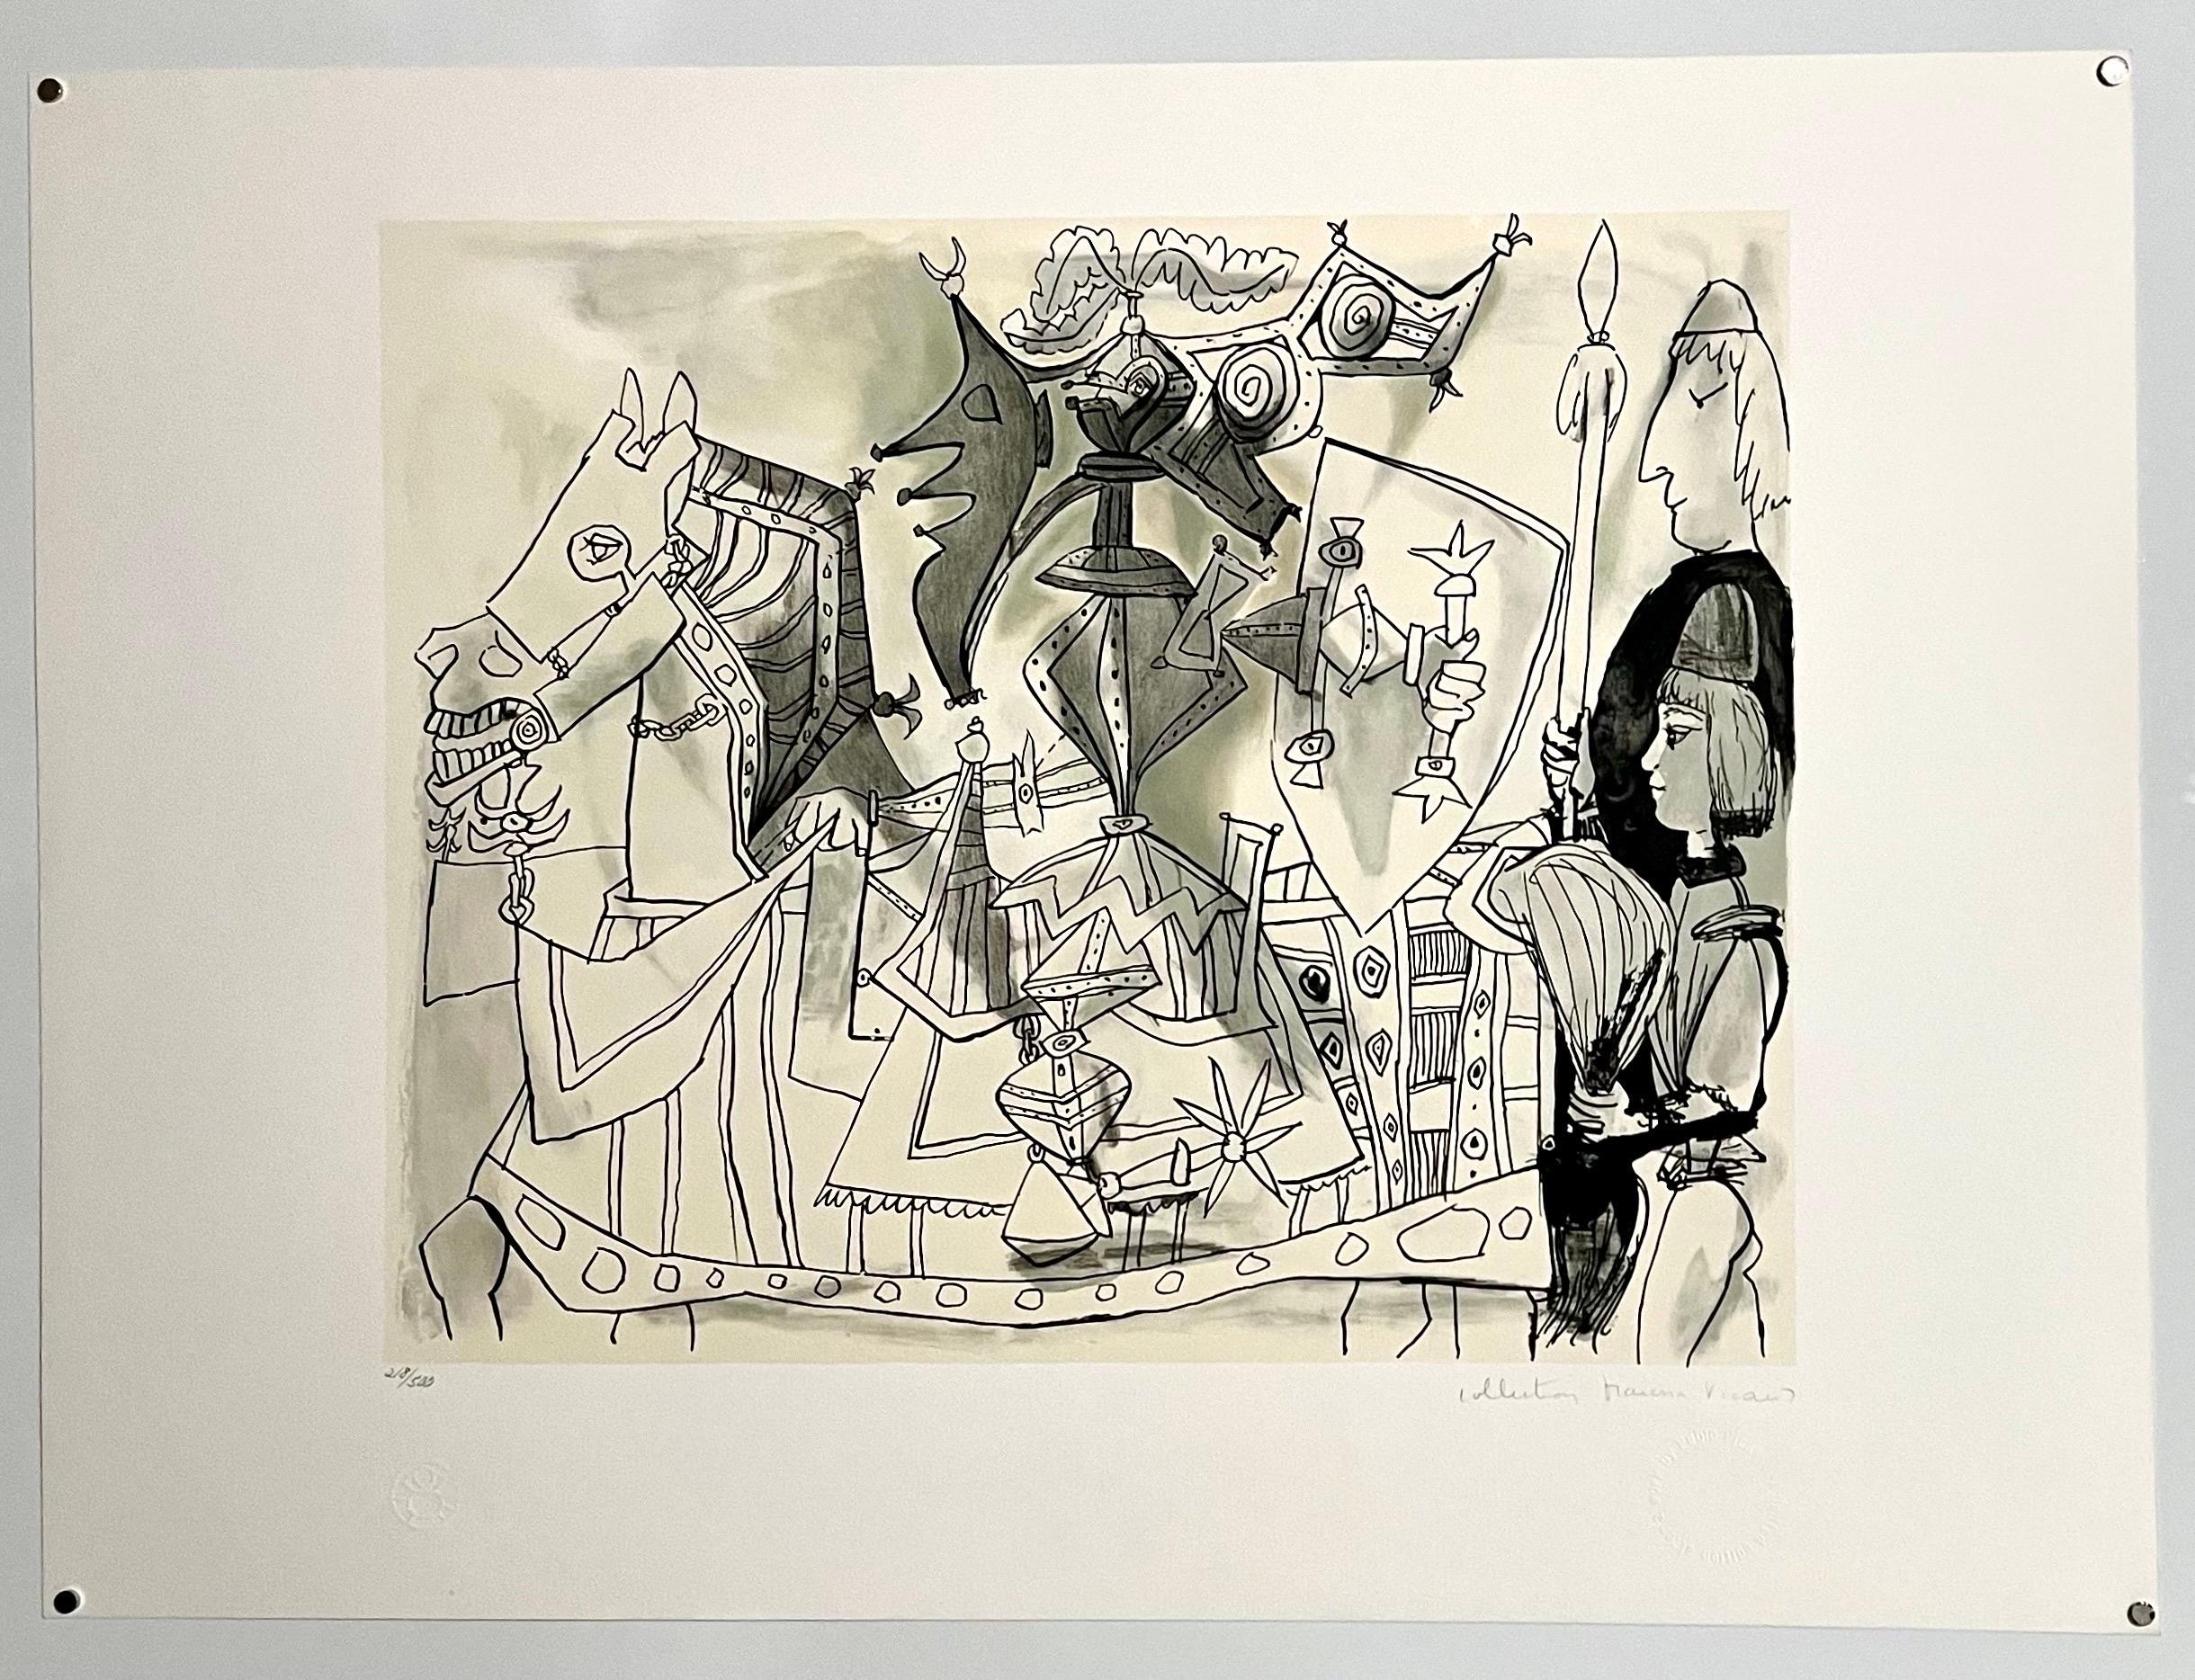 Lithographie cubiste abstraite signée à la main représentant un cheval, une armure et un cheval, Pablo Picasso - Print de (after) Pablo Picasso